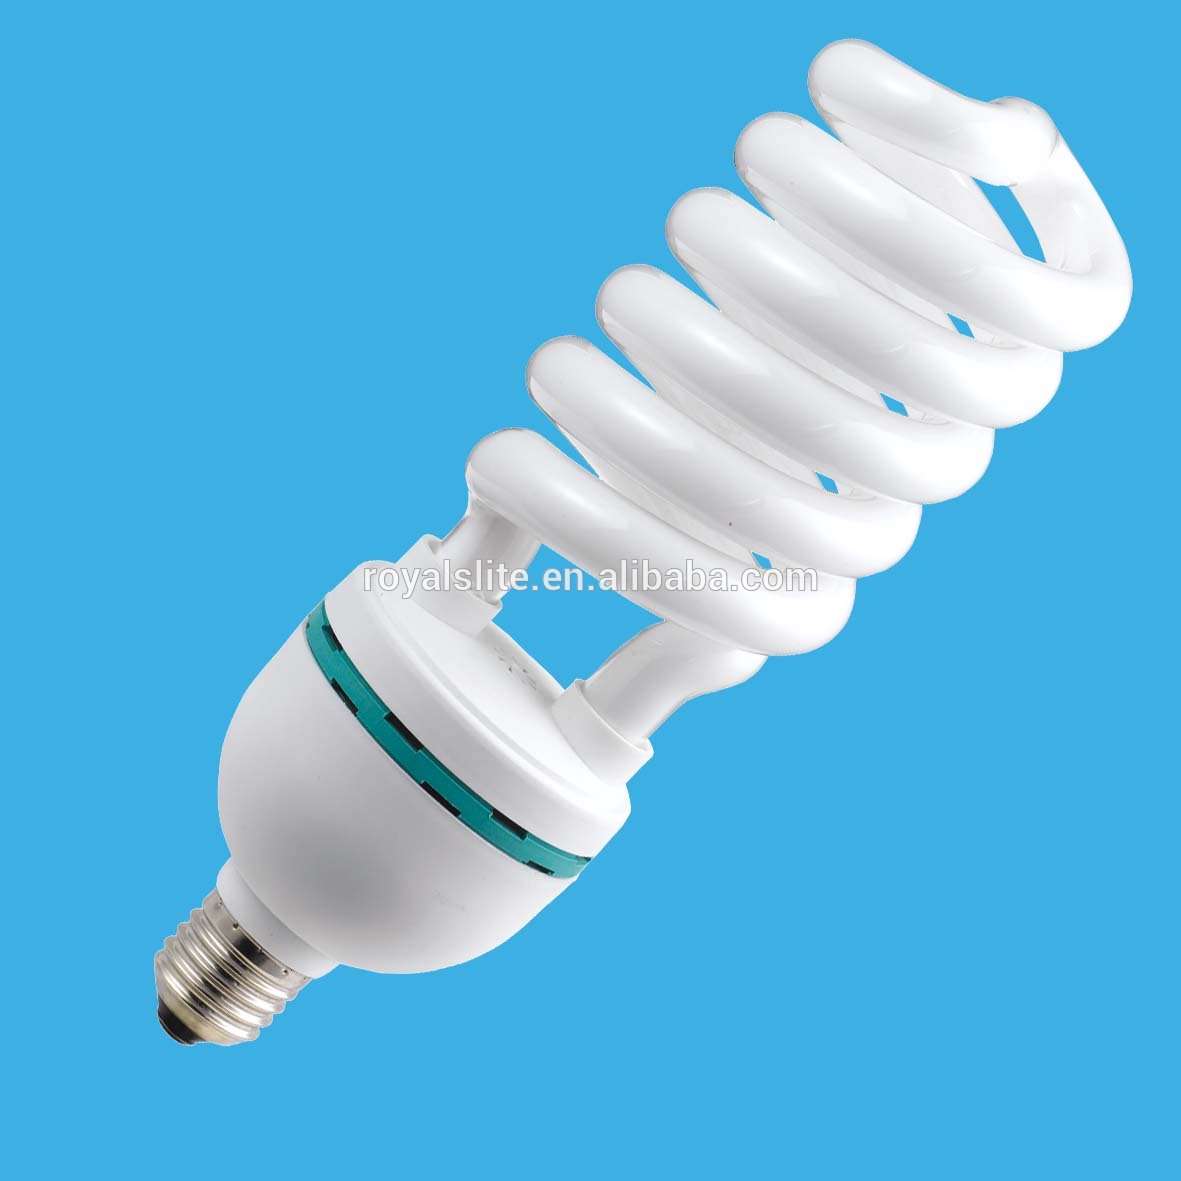 China supplier goods best seller energy saver bulb